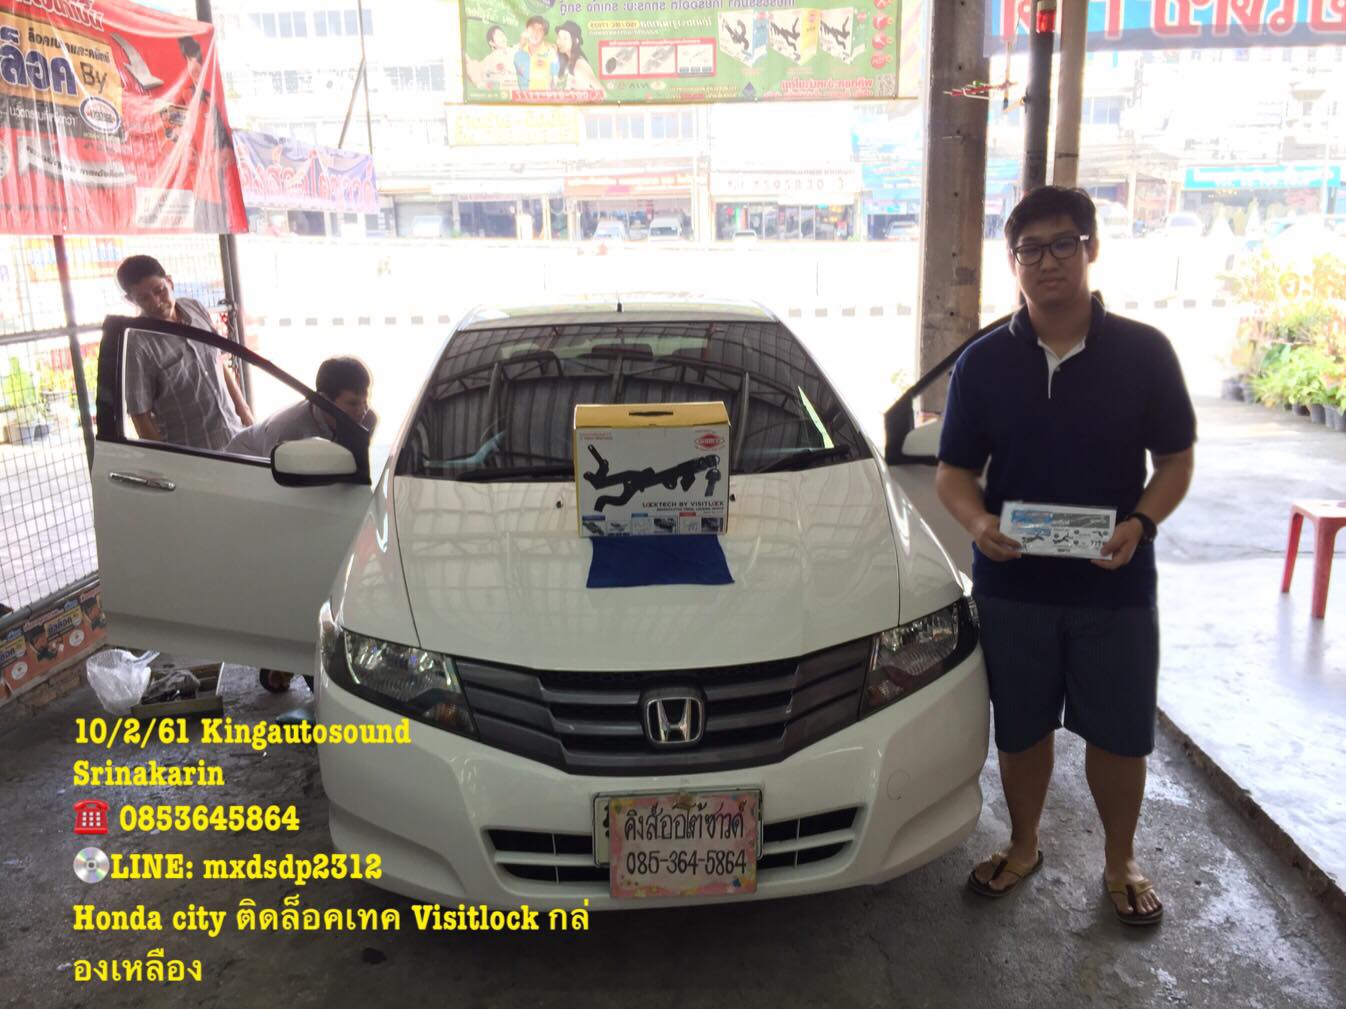 ลูกค้านำรถ Honda city มาติดล็อคเทค Visitlock กล่องเหลือง กับทางร้าน ติดต่อ 0853645864 FB:@ran.kingau...